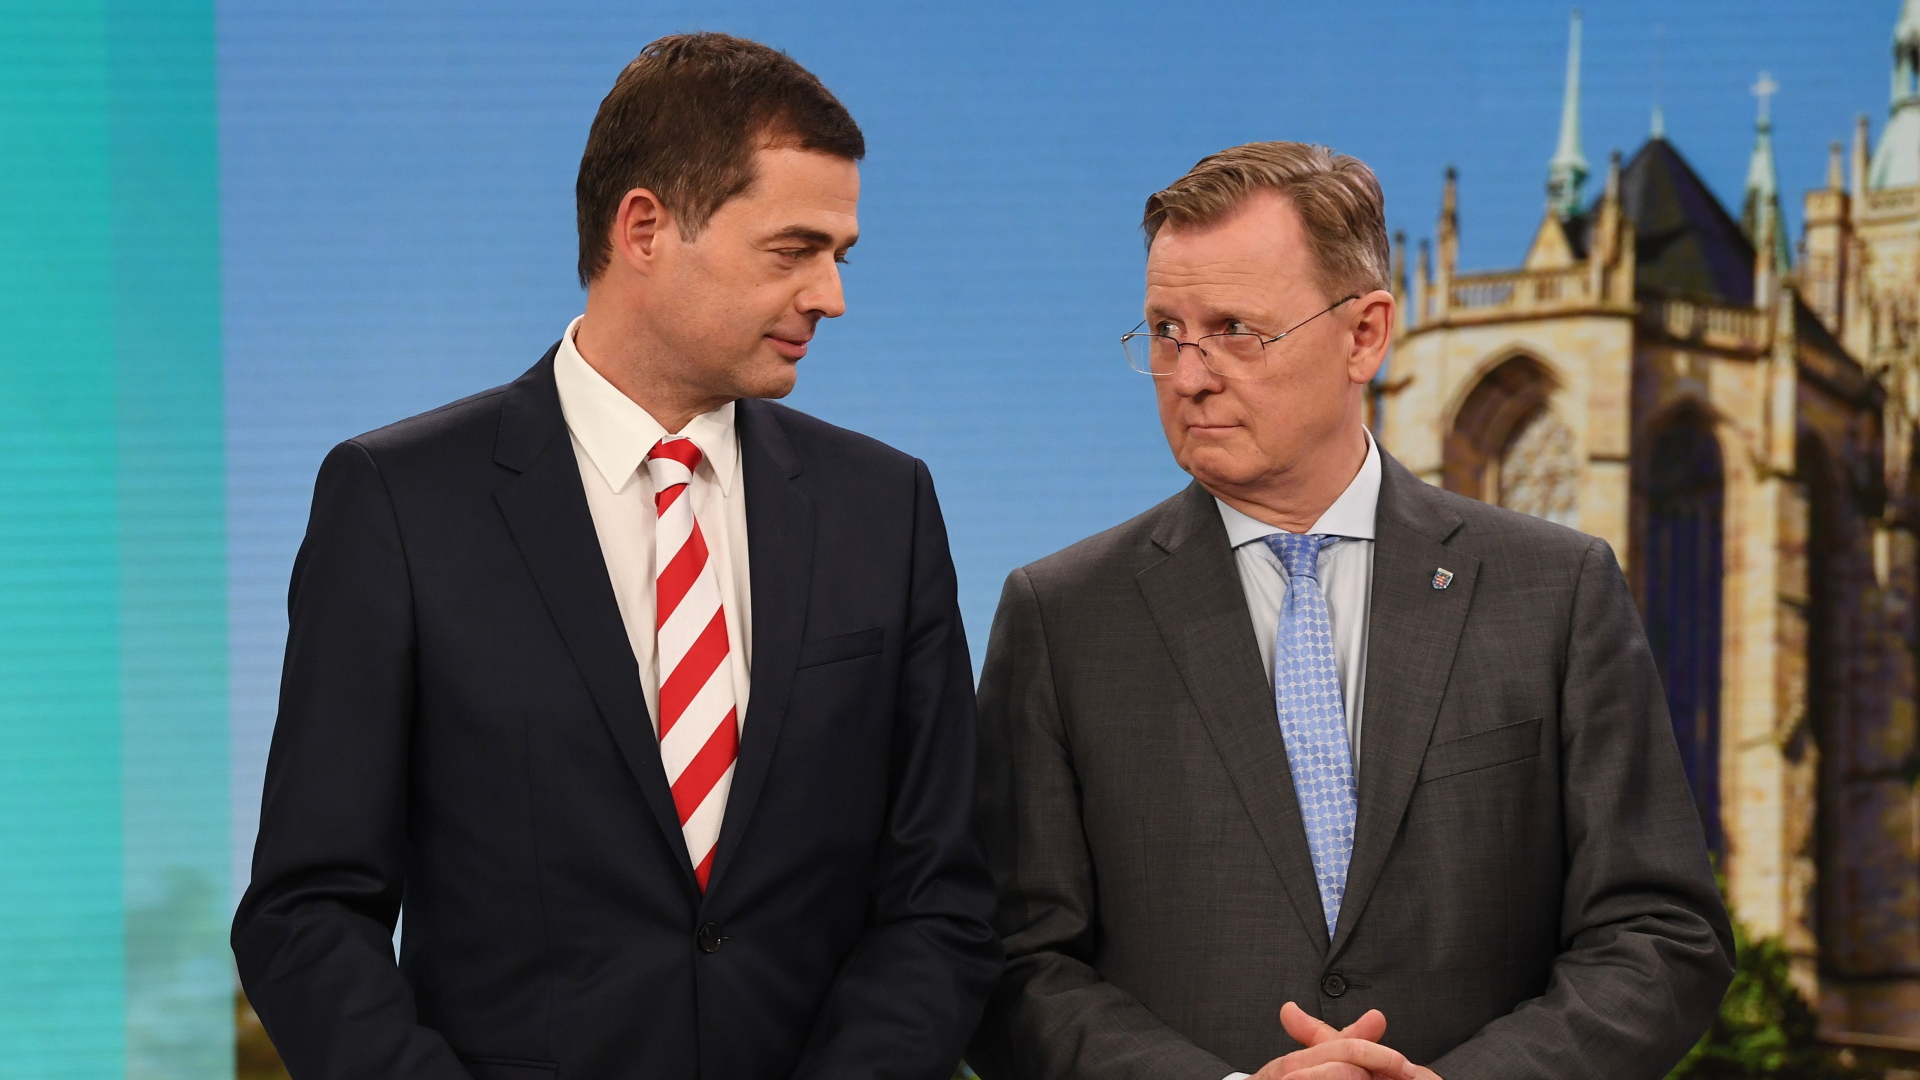 Thüringens CDU-Chef Mohring und Ministerpräsident Ramelow (Linke) | Bildquelle: AFP